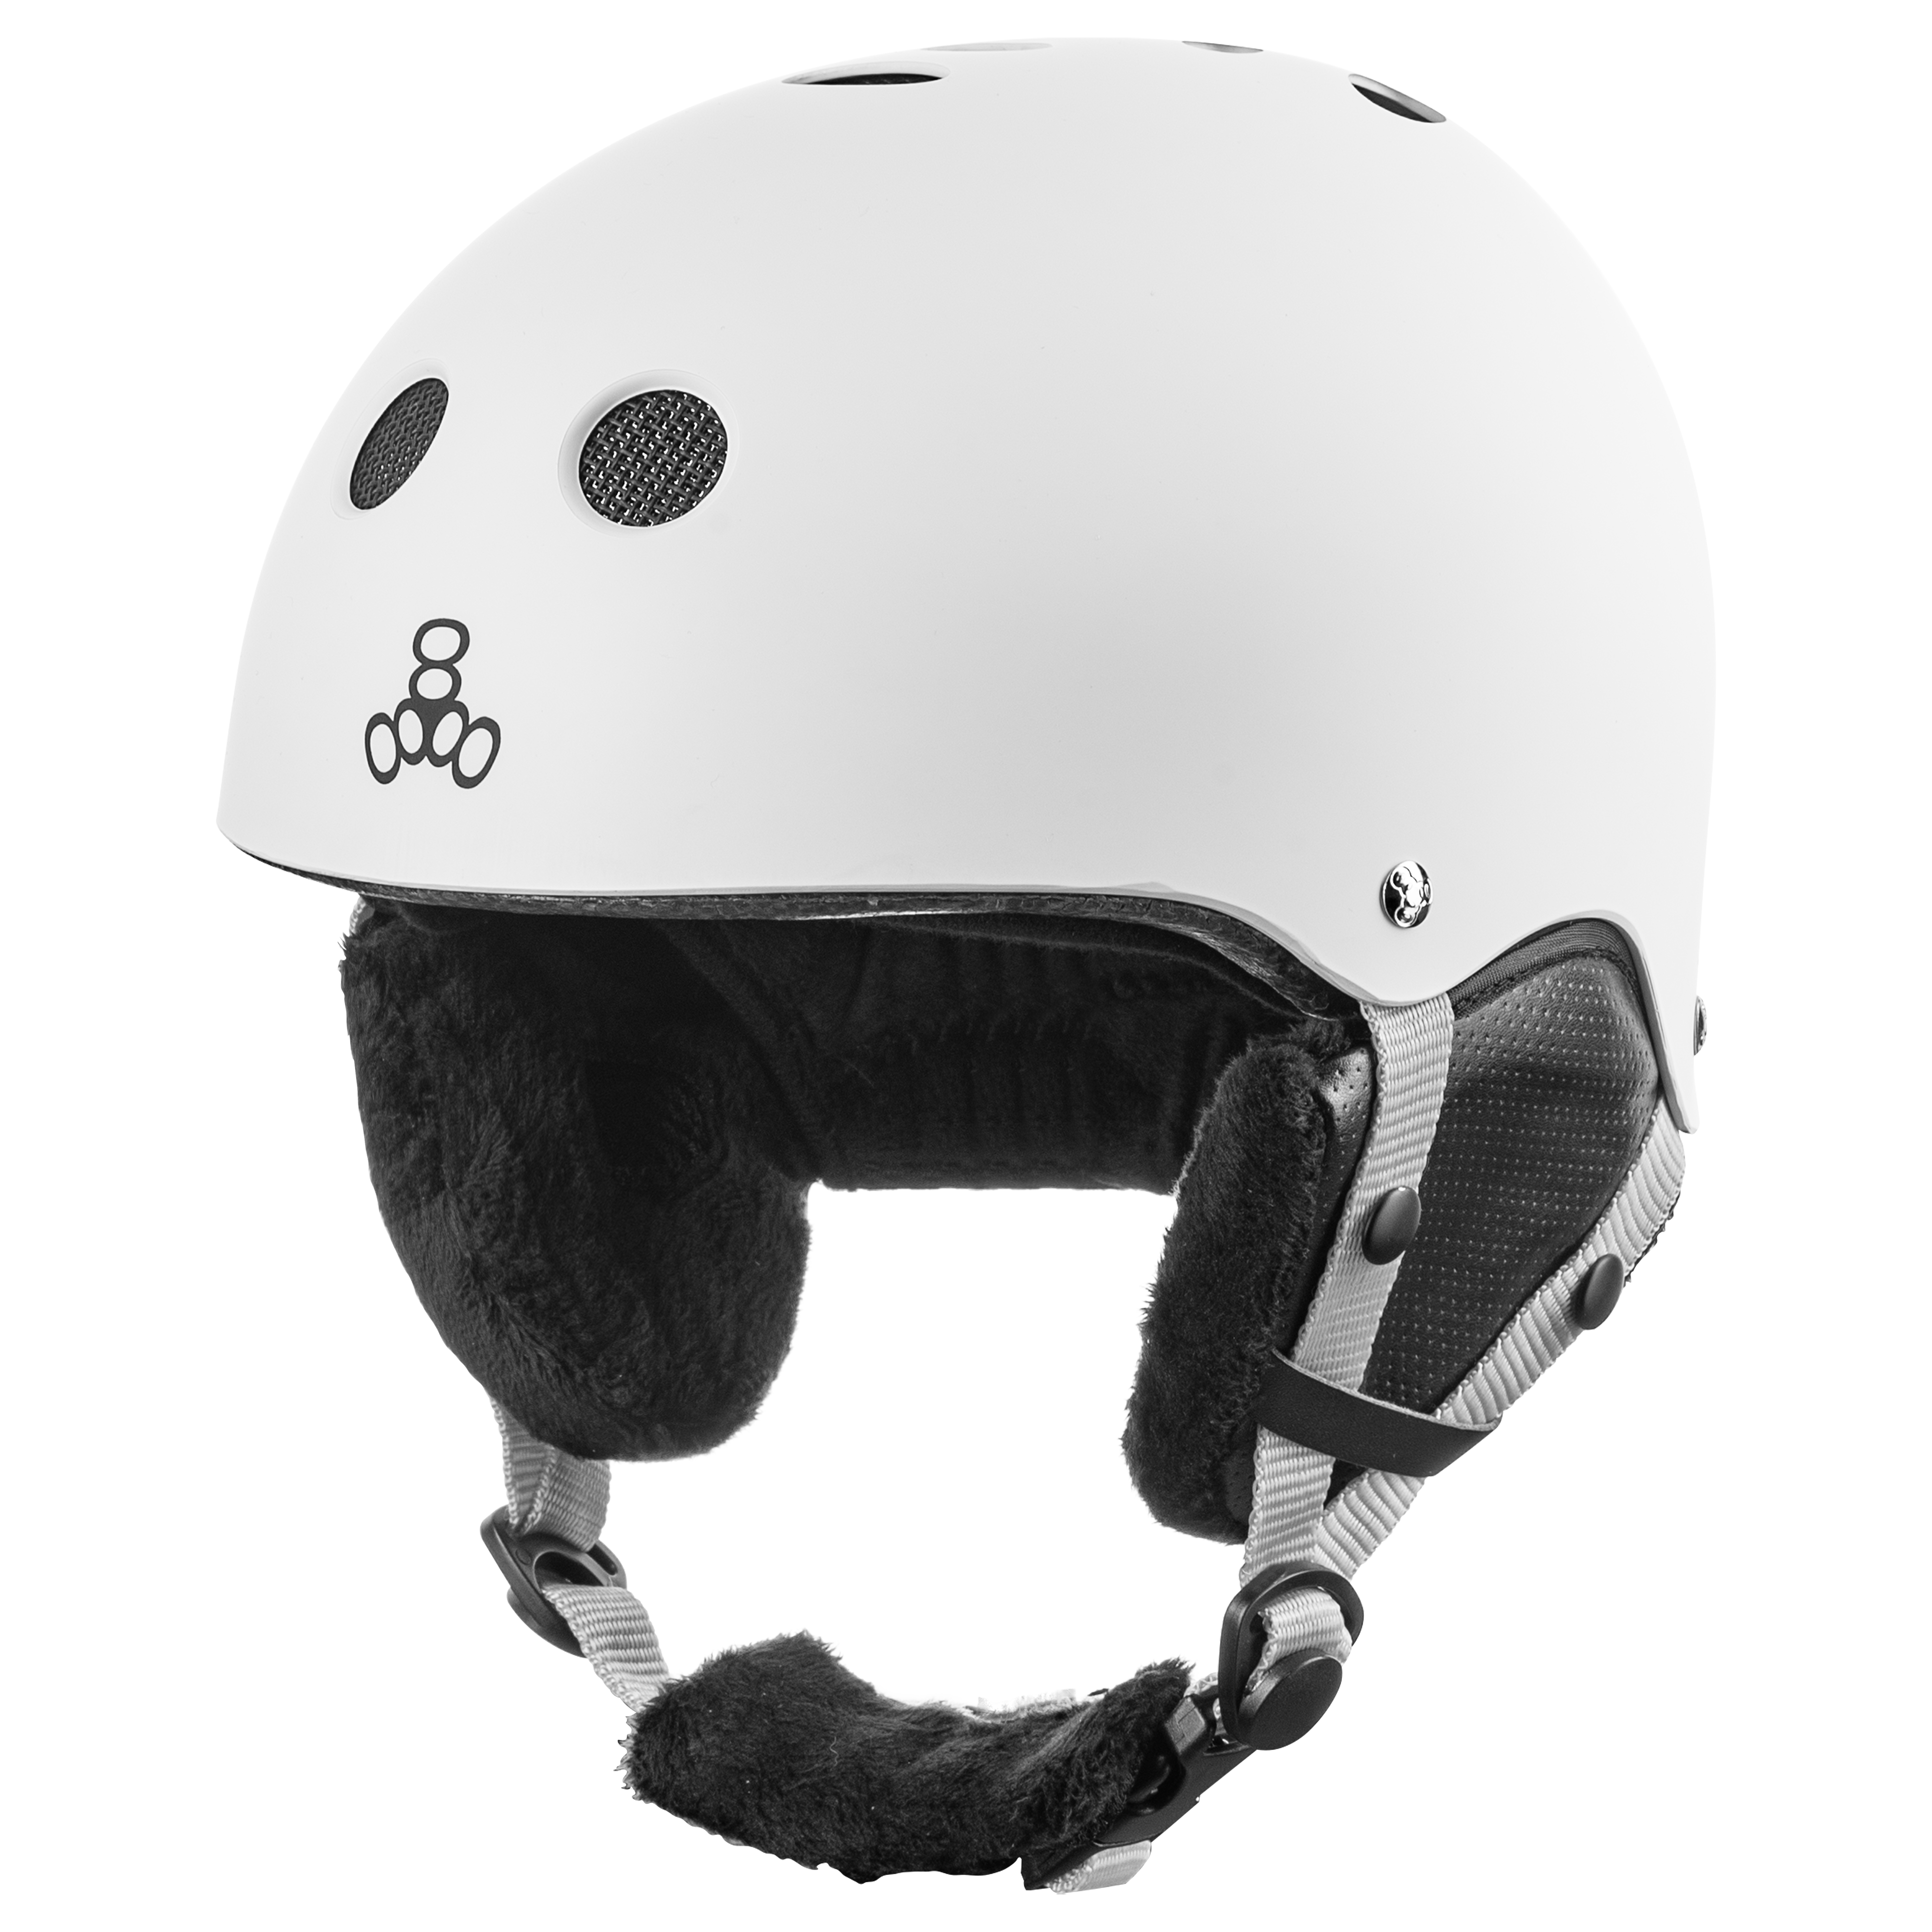 Купить шлем горнолыжный Triple8 Halo Snow Standart White Rubber (S/M) в Киеве